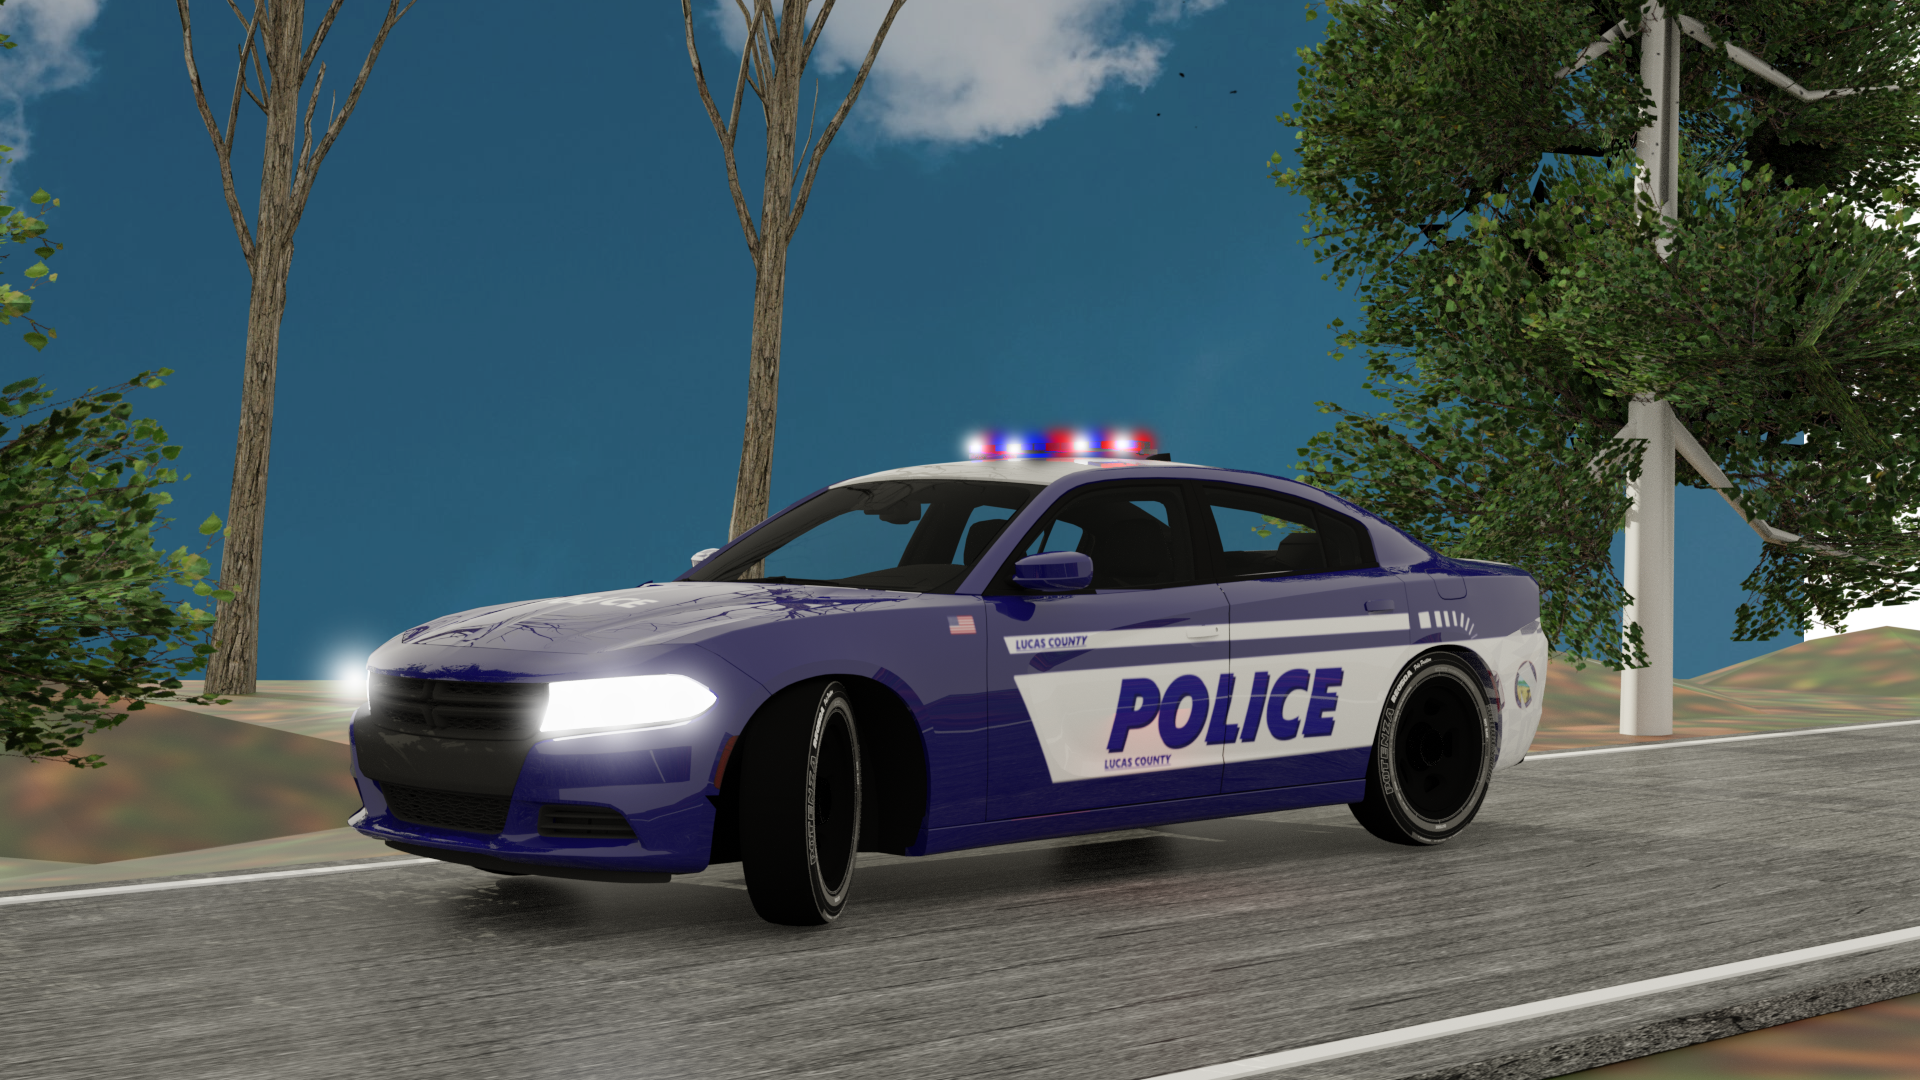 GFX for police car Feedback